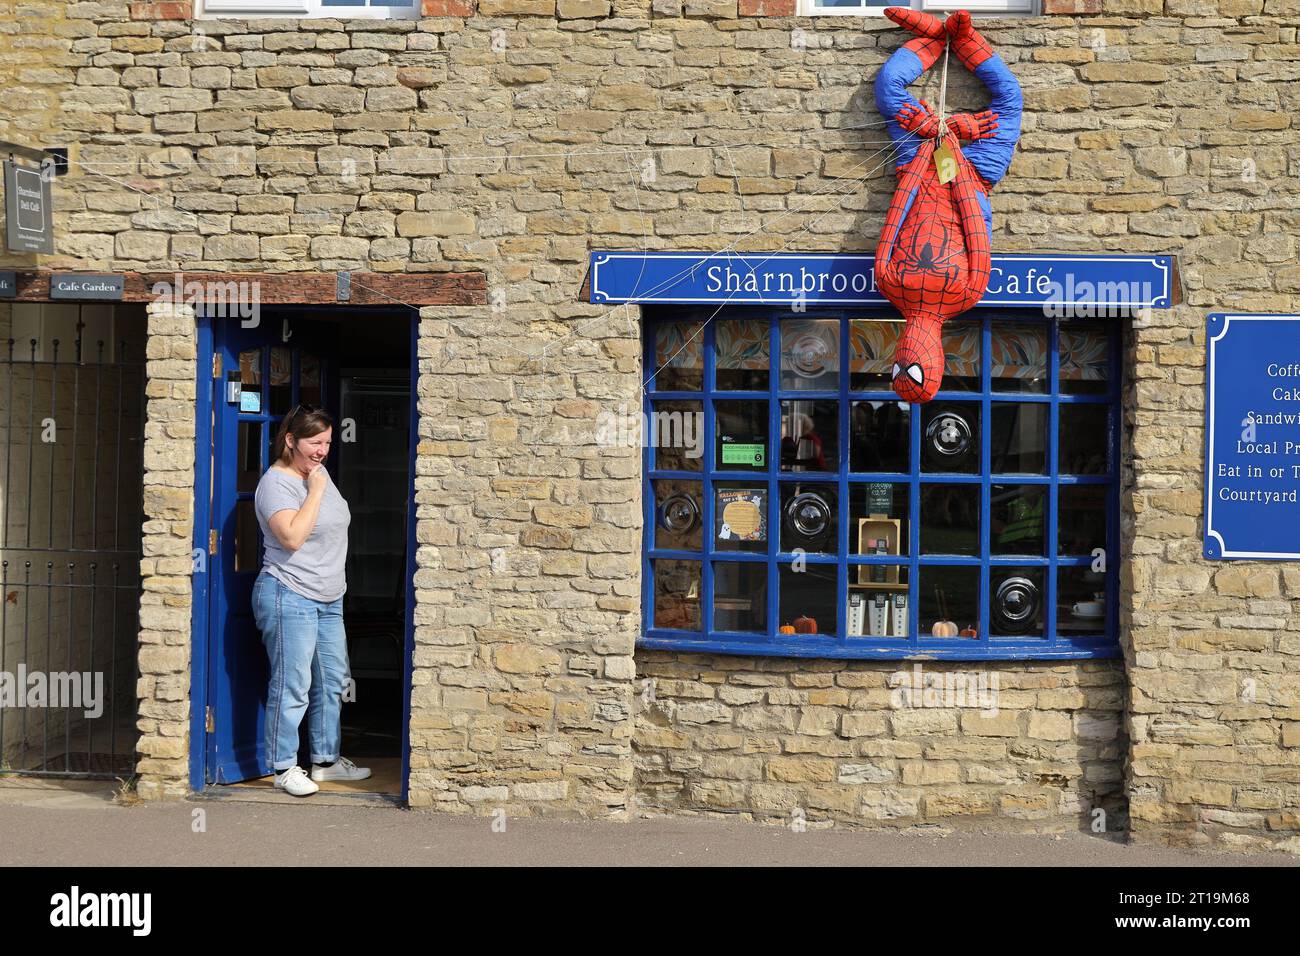 Spider-man épouvantail devant Deli Cafe pendant le festival du village épouvantail à Sharnbrook High Street, Bedfordshire, Angleterre, Royaume-Uni Banque D'Images